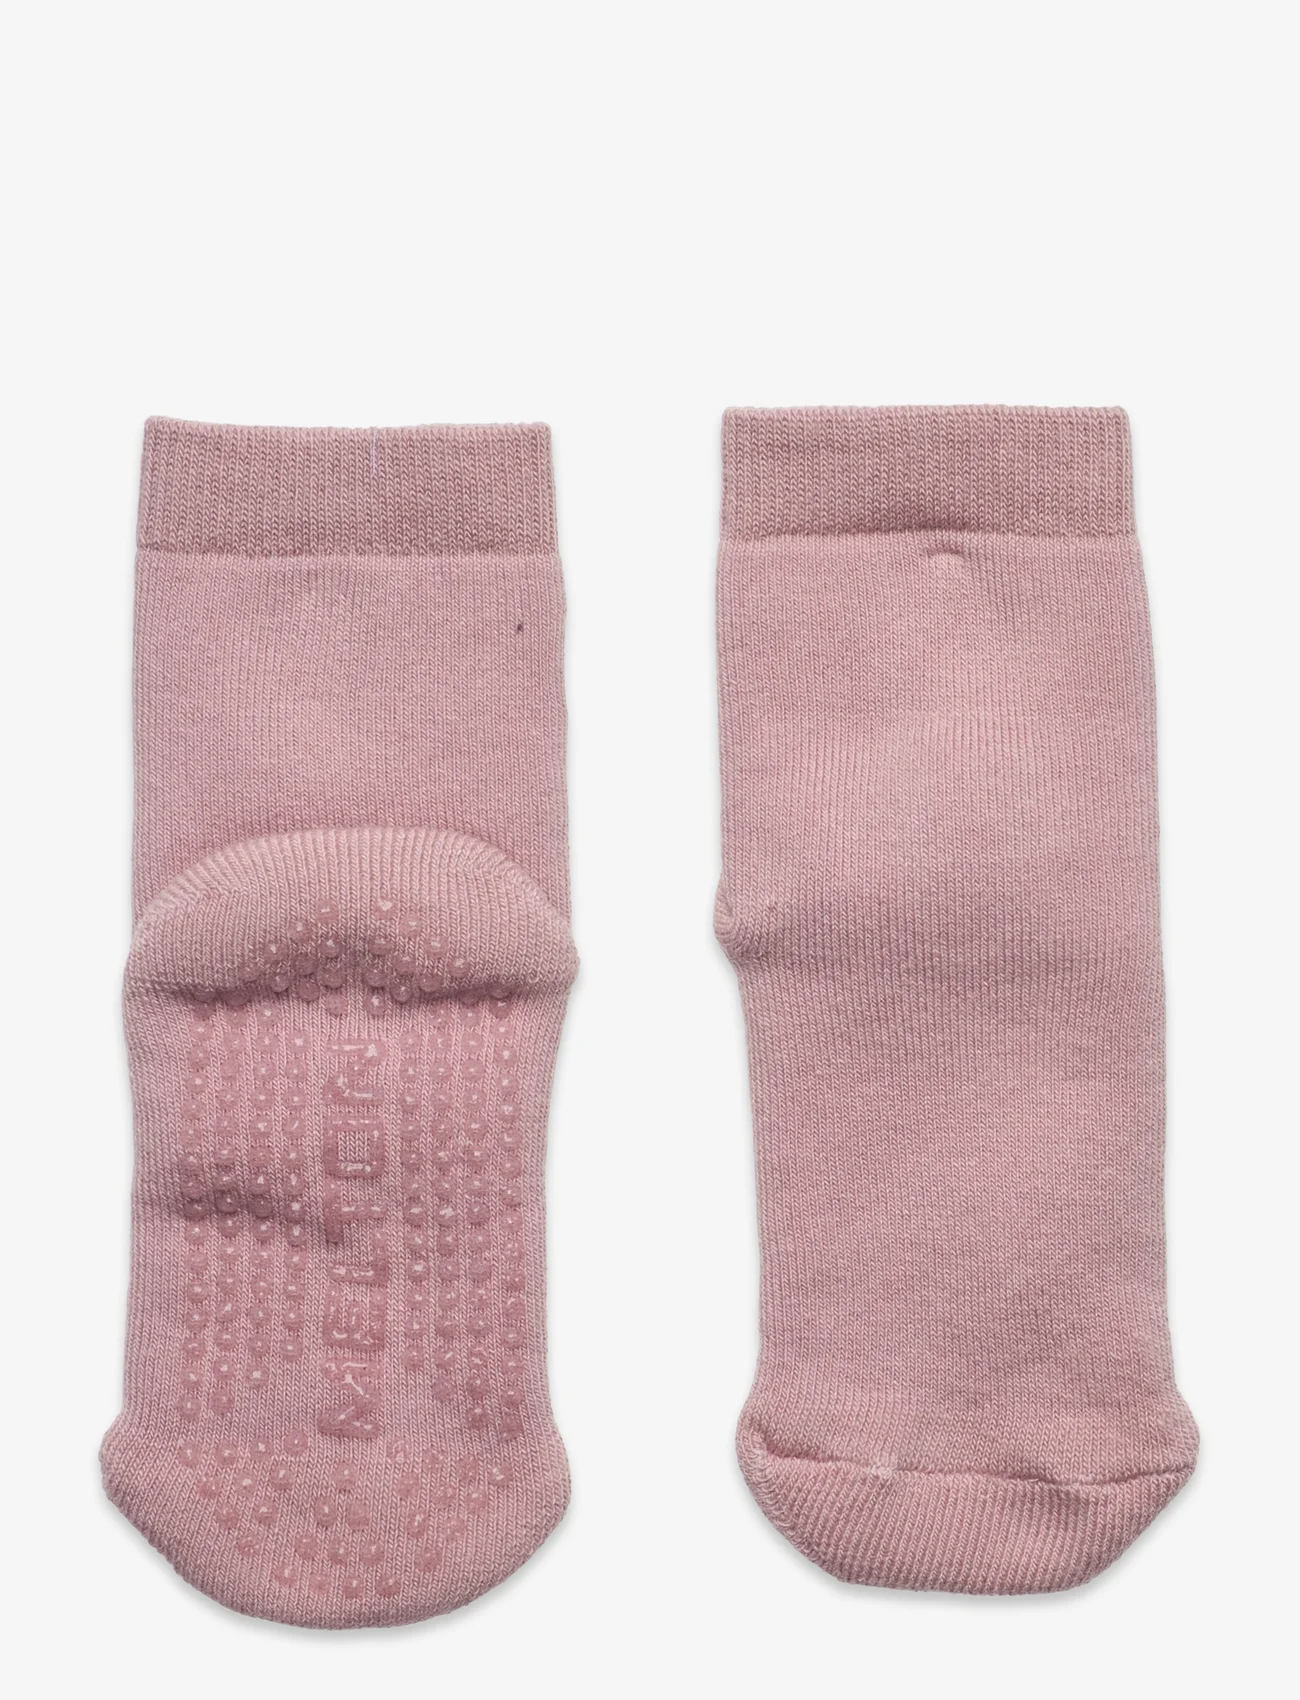 Melton - Cotton socks - Let's Go - lowest prices - alt rosa - 0